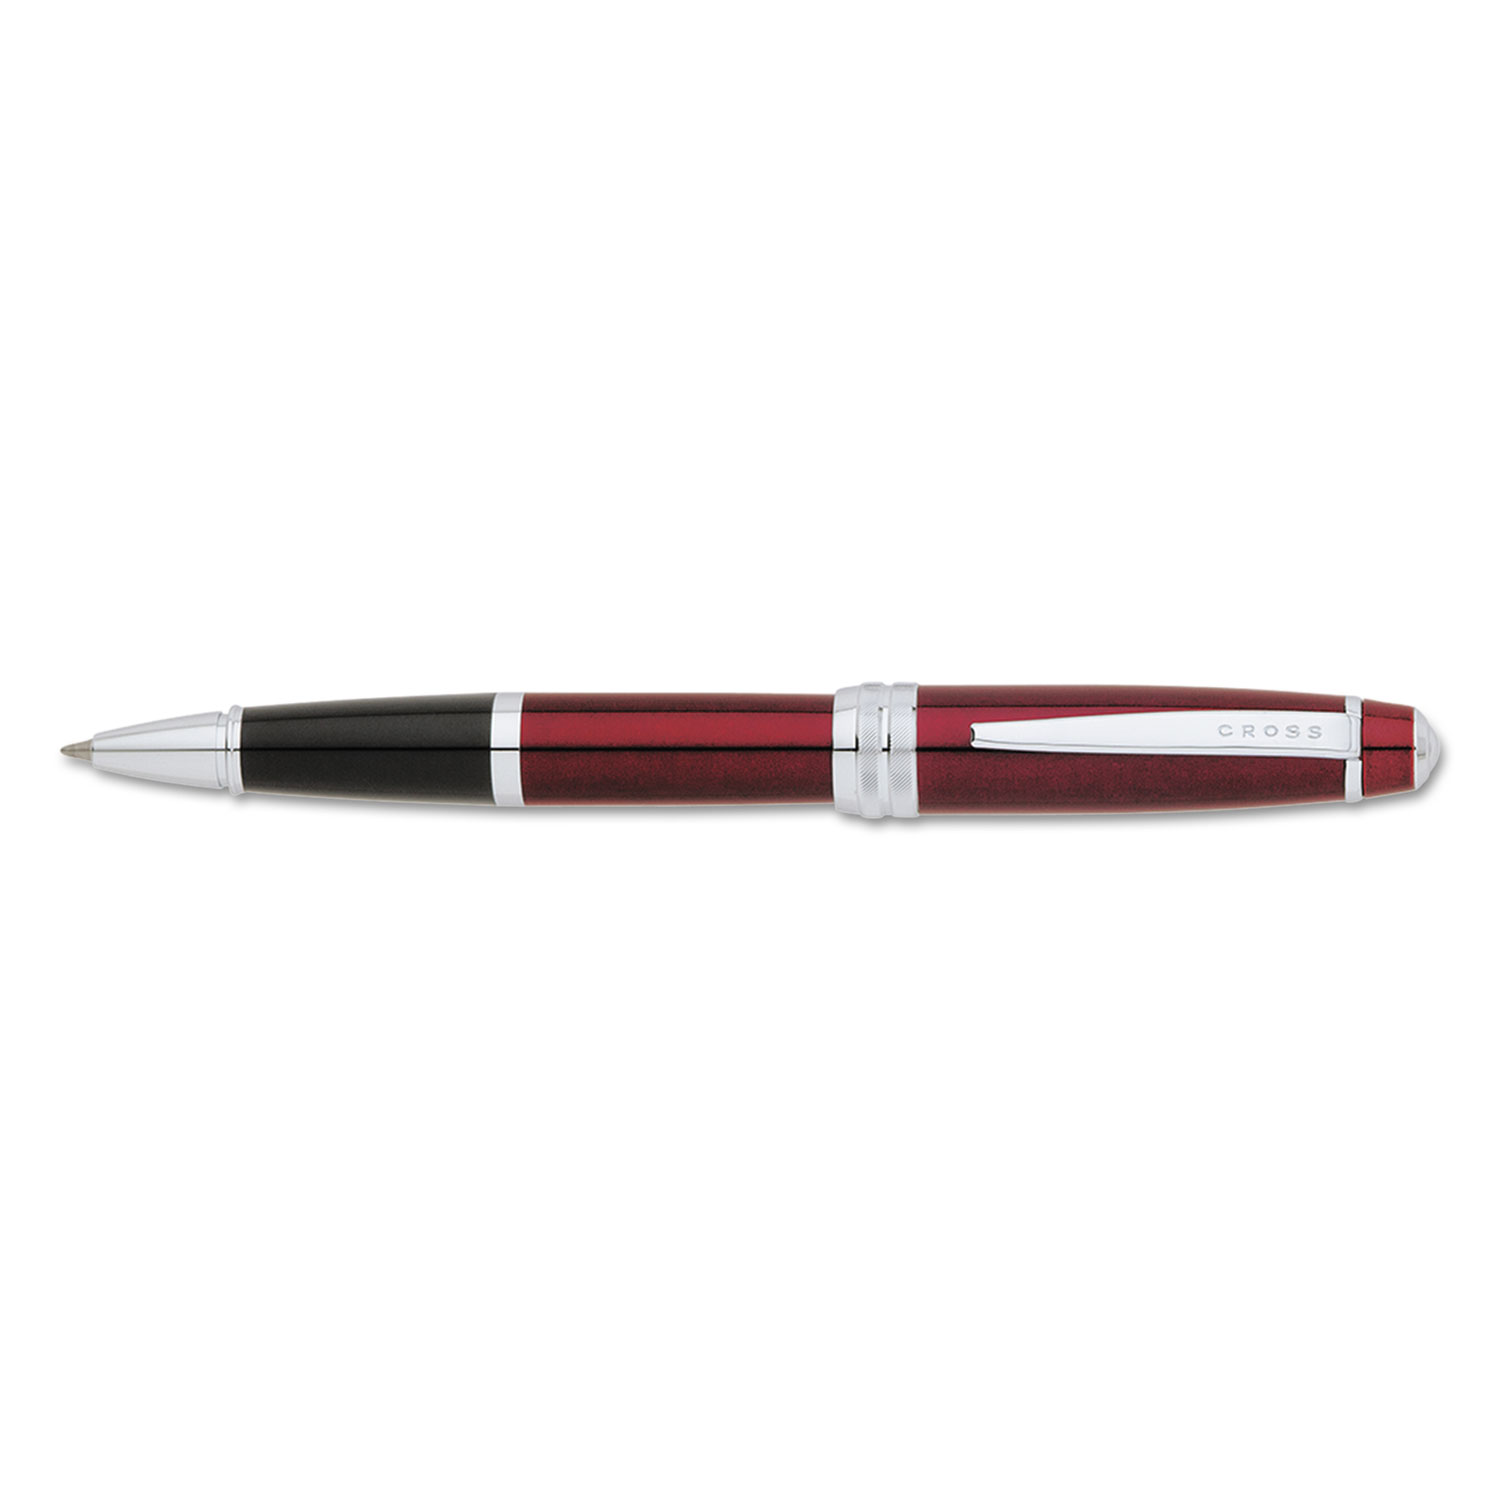 Bailey Rolling Ball Pen, Black Ink, Red Barrel, Medium